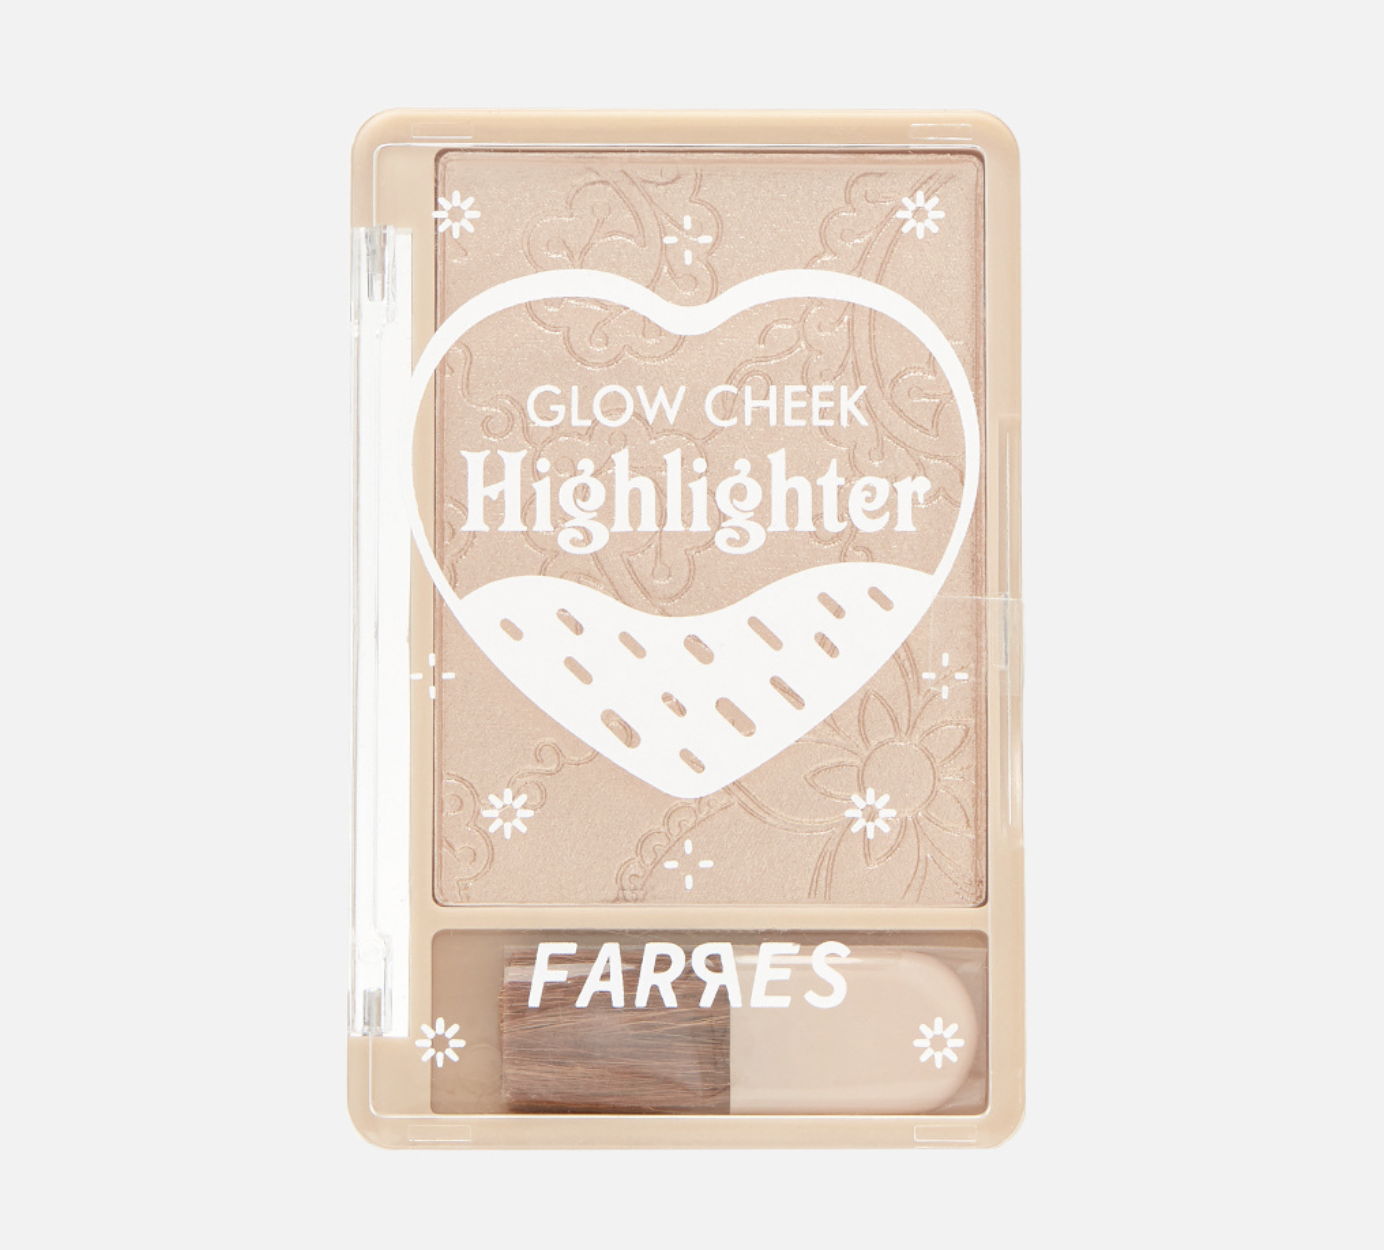   / Farres -    Glow Cheek Highlighter 3205-03, 9,6 